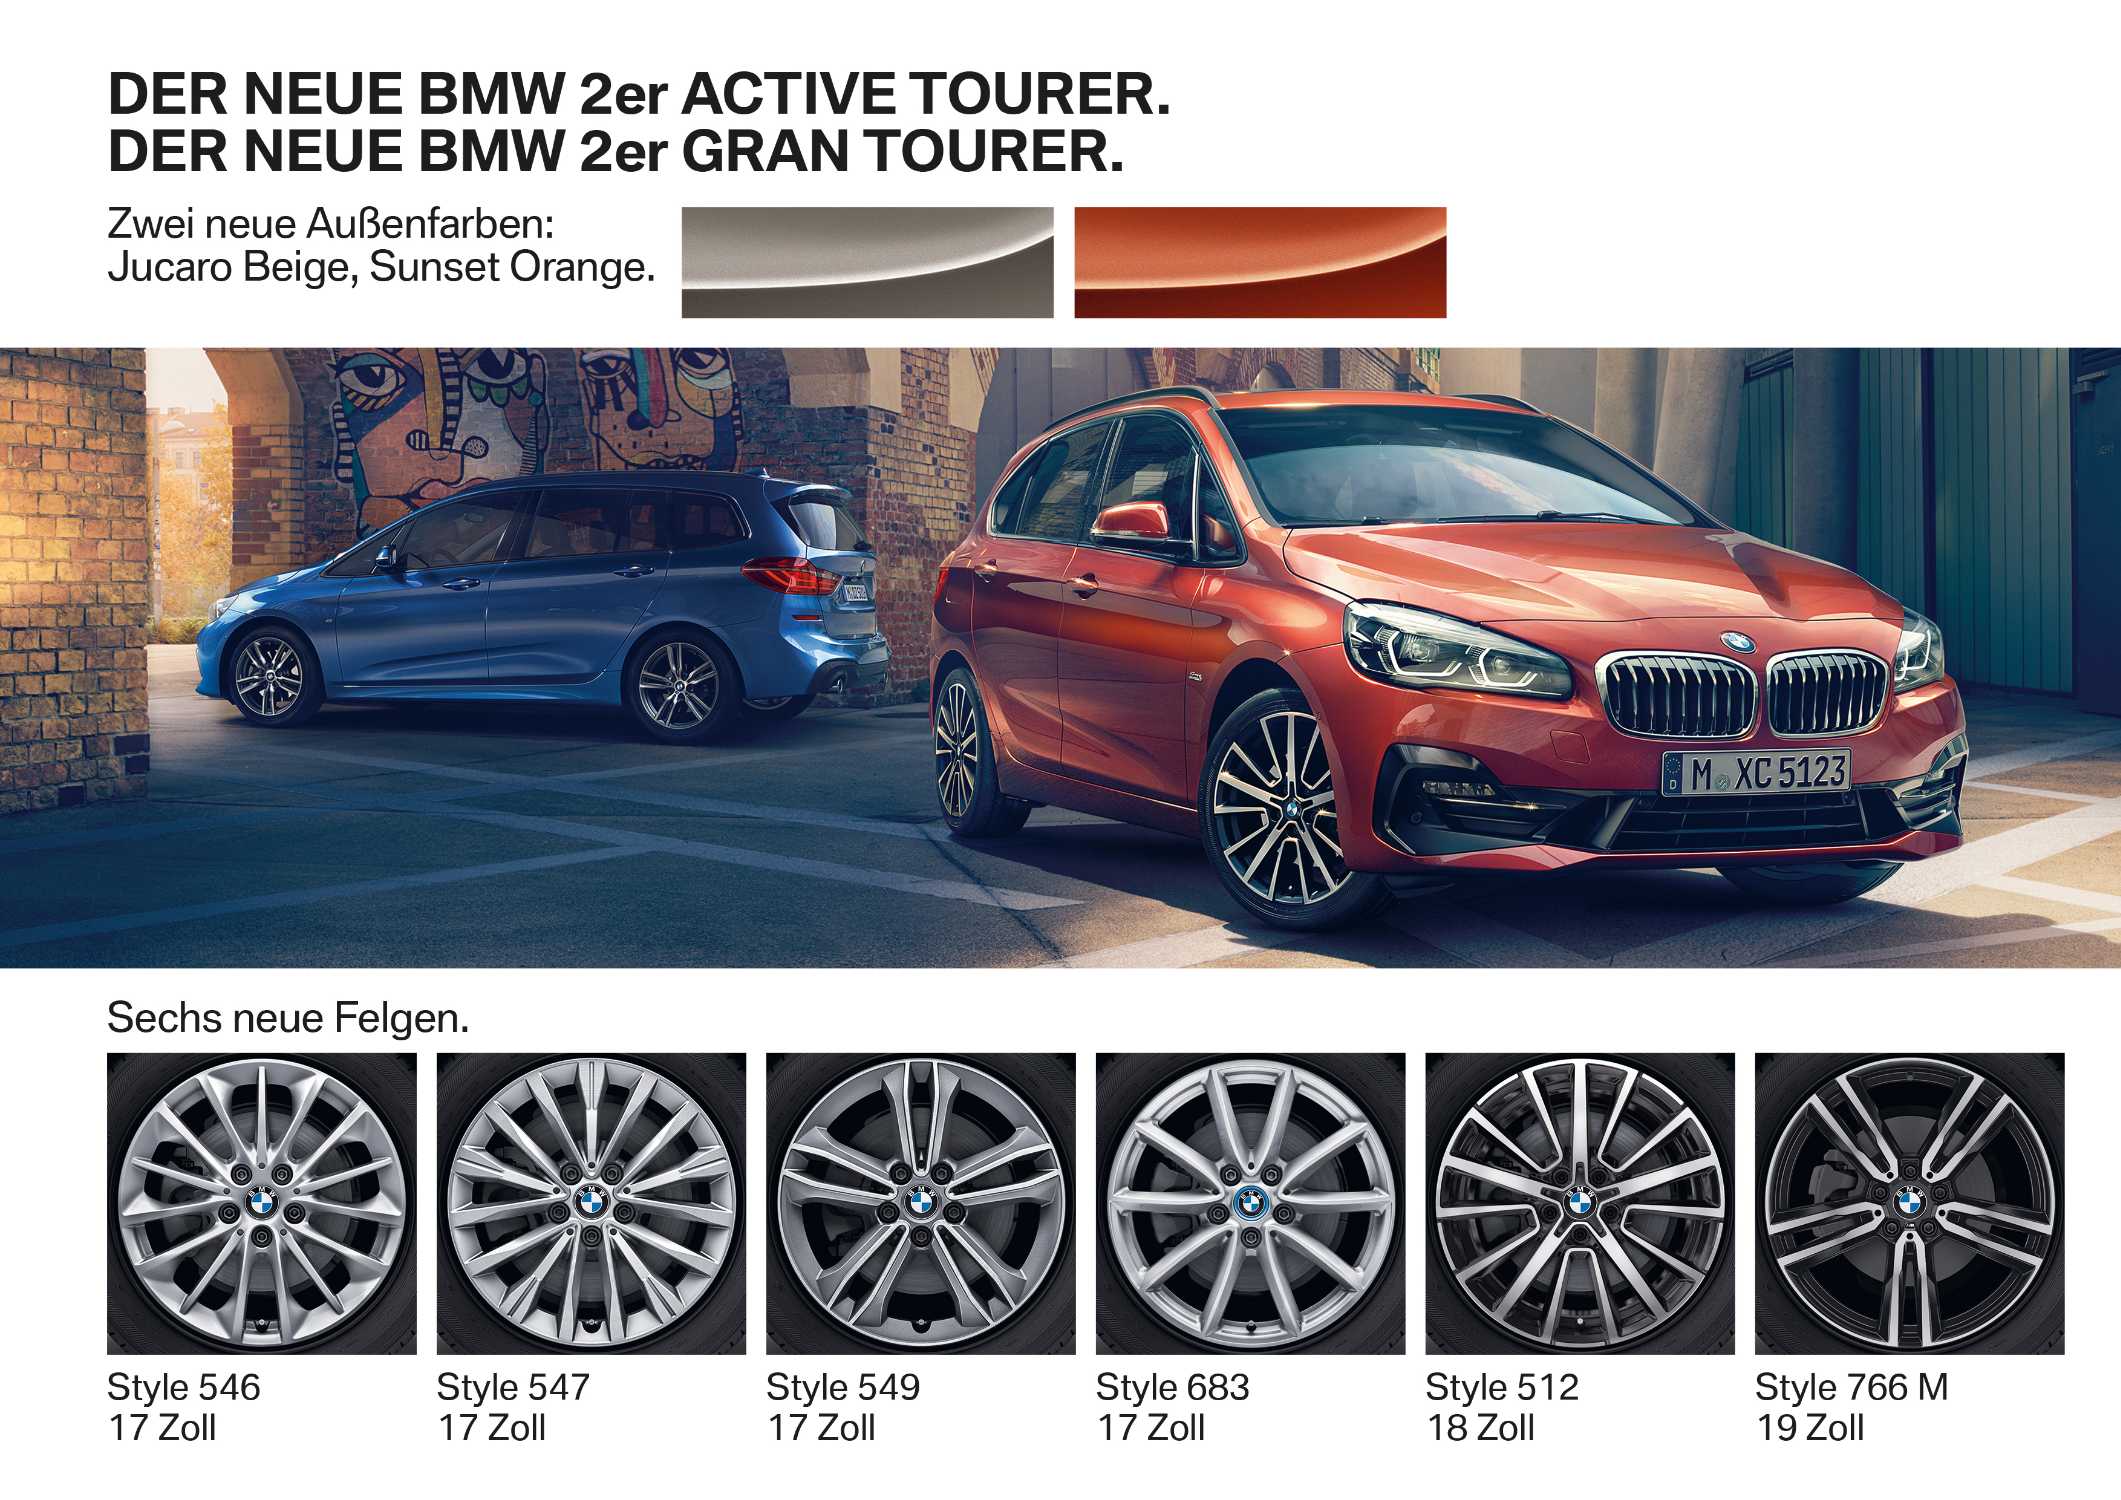 Der neue BMW 2er Active Tourer. Der neue BMW 2er Gran Tourer.